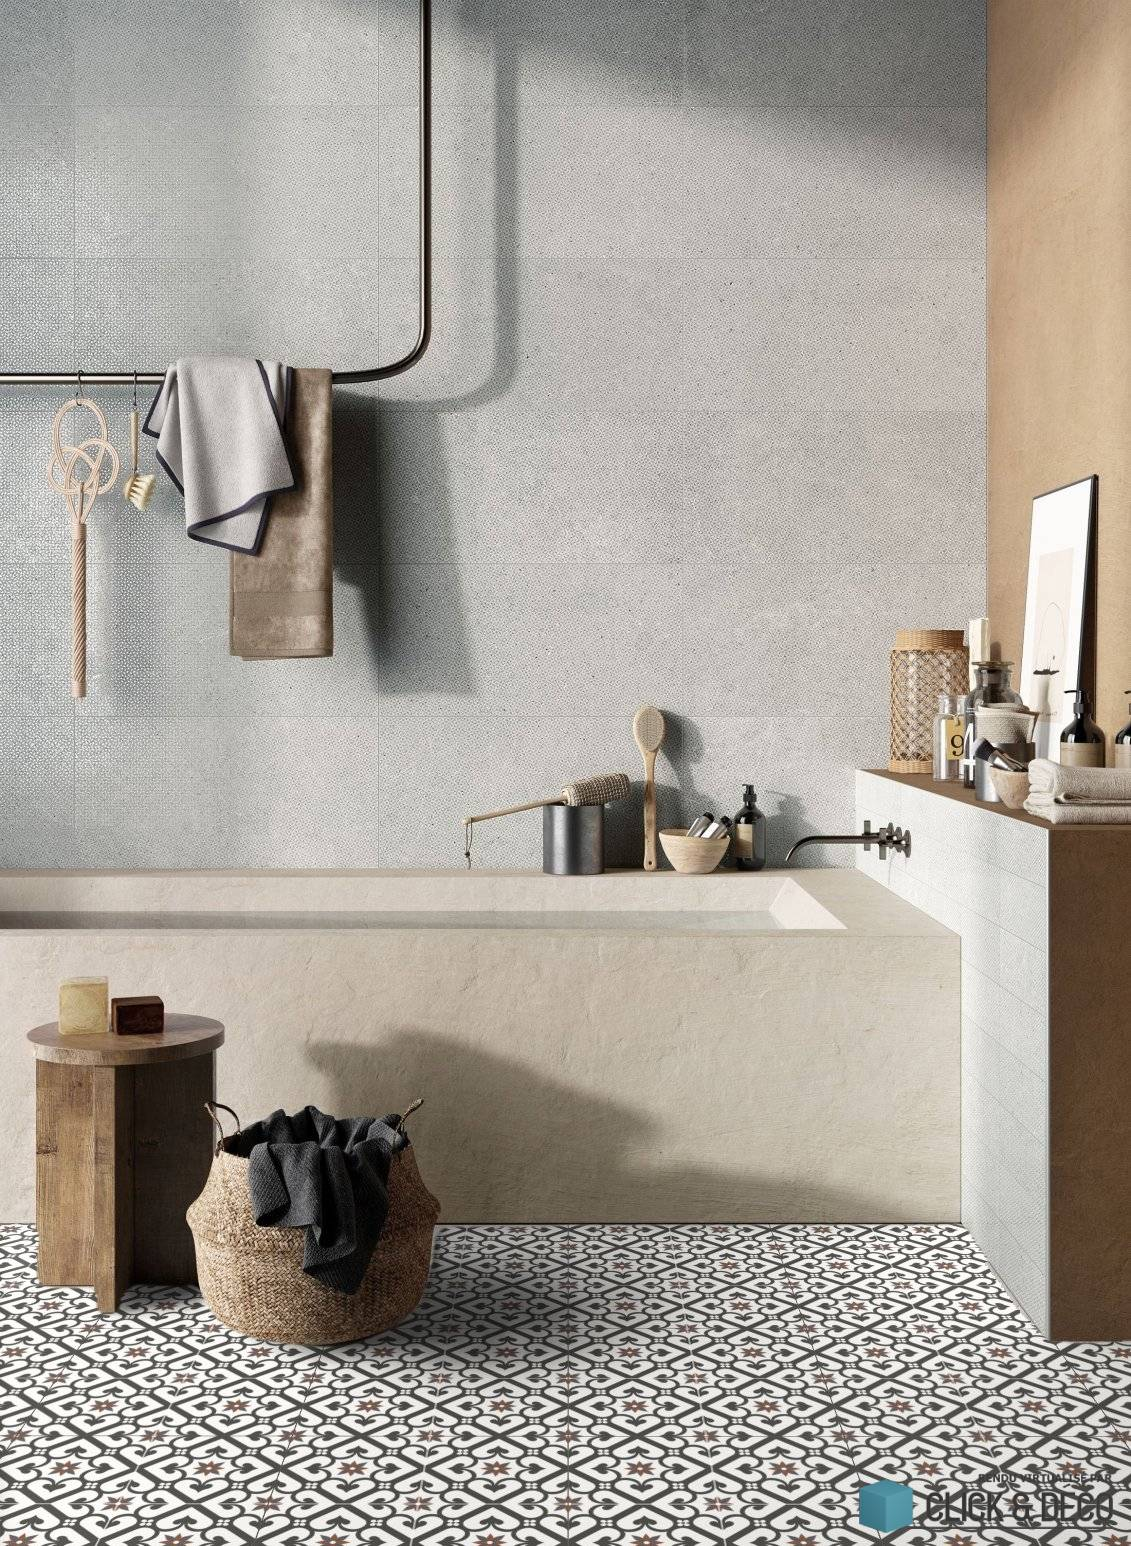 Carreau de ciment rouge et blanc motifs géométriques dans une salle de bain tons beige et gris avec baignoire accessoires en bois et métal